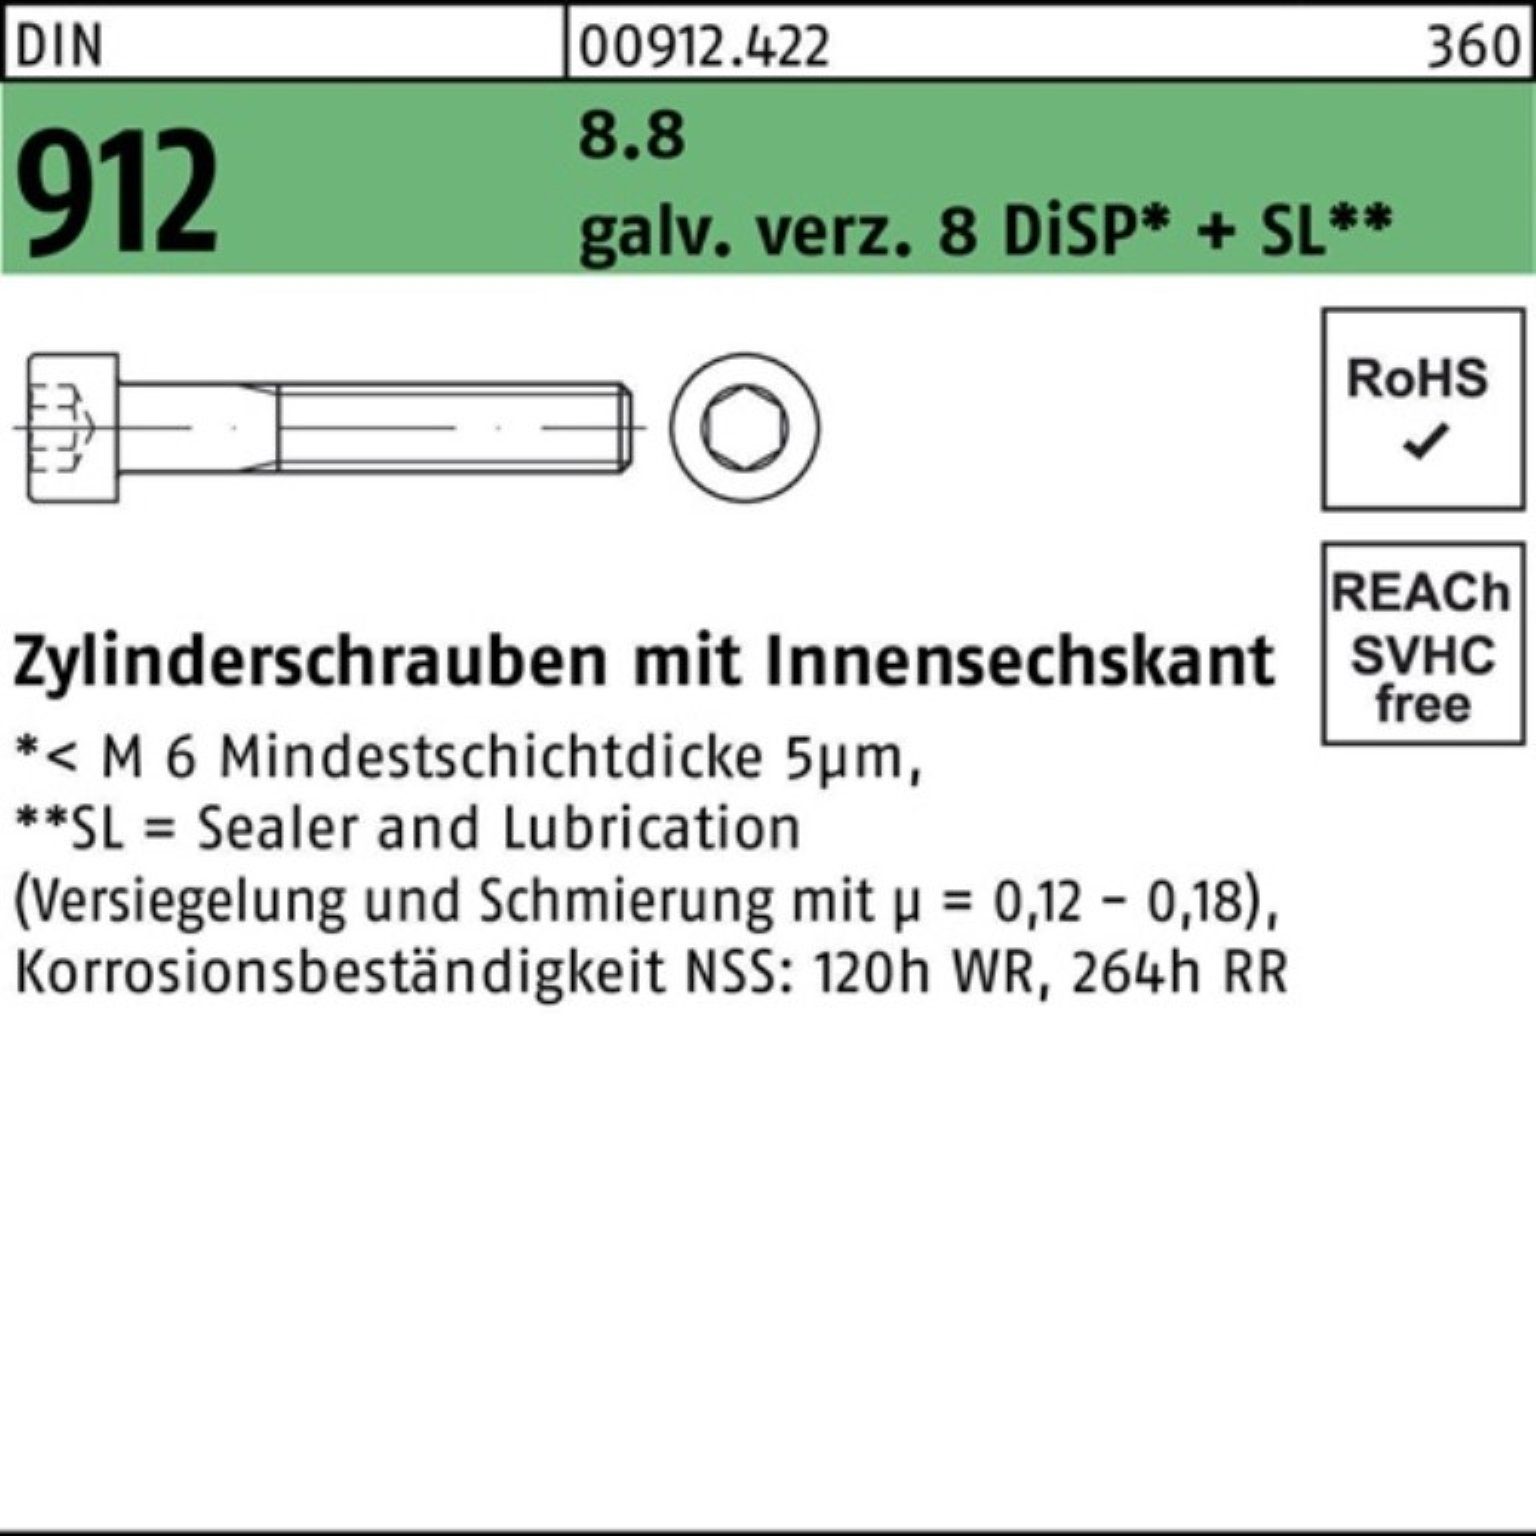 M8x Zylinderschraube DIN Reyher 45 DiSP Innen-6kt 200er Pack 912 Zn 8 Zylinderschraube 8.8 gal